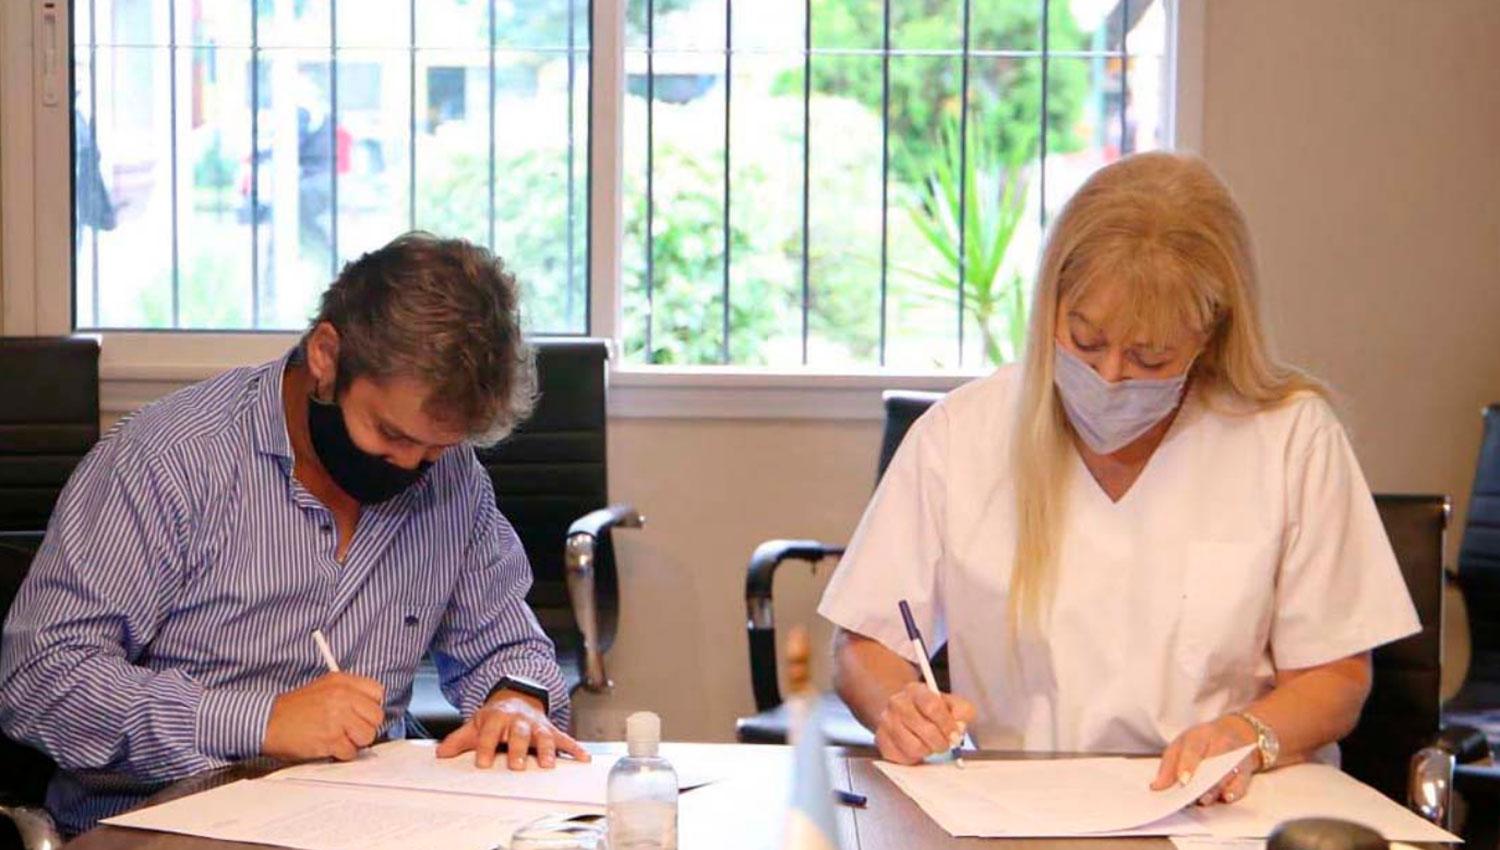 ACUERDO. Campero y Chahla firmaron un documento de entendimiento y colaboración para establecer protocolos para frenar los contagios.